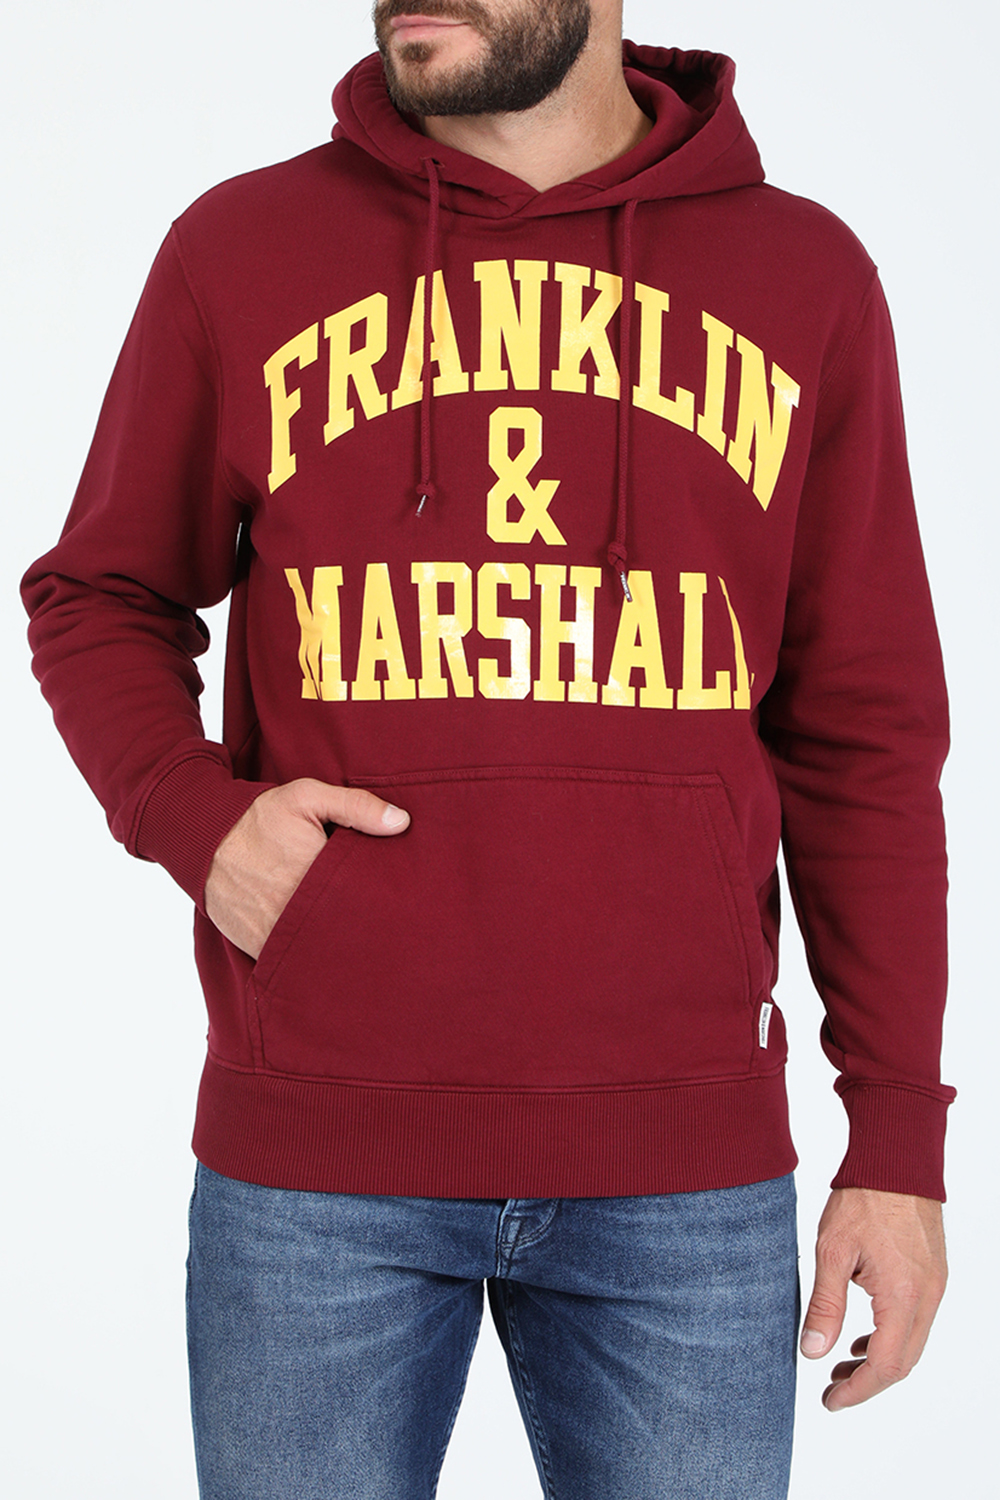 Ανδρικά/Ρούχα/Φούτερ/Μπλούζες FRANKLIN & MARSHALL - Ανδρική φούτερ μπλούζα FRANKLIN & MARSHALL μπορντό